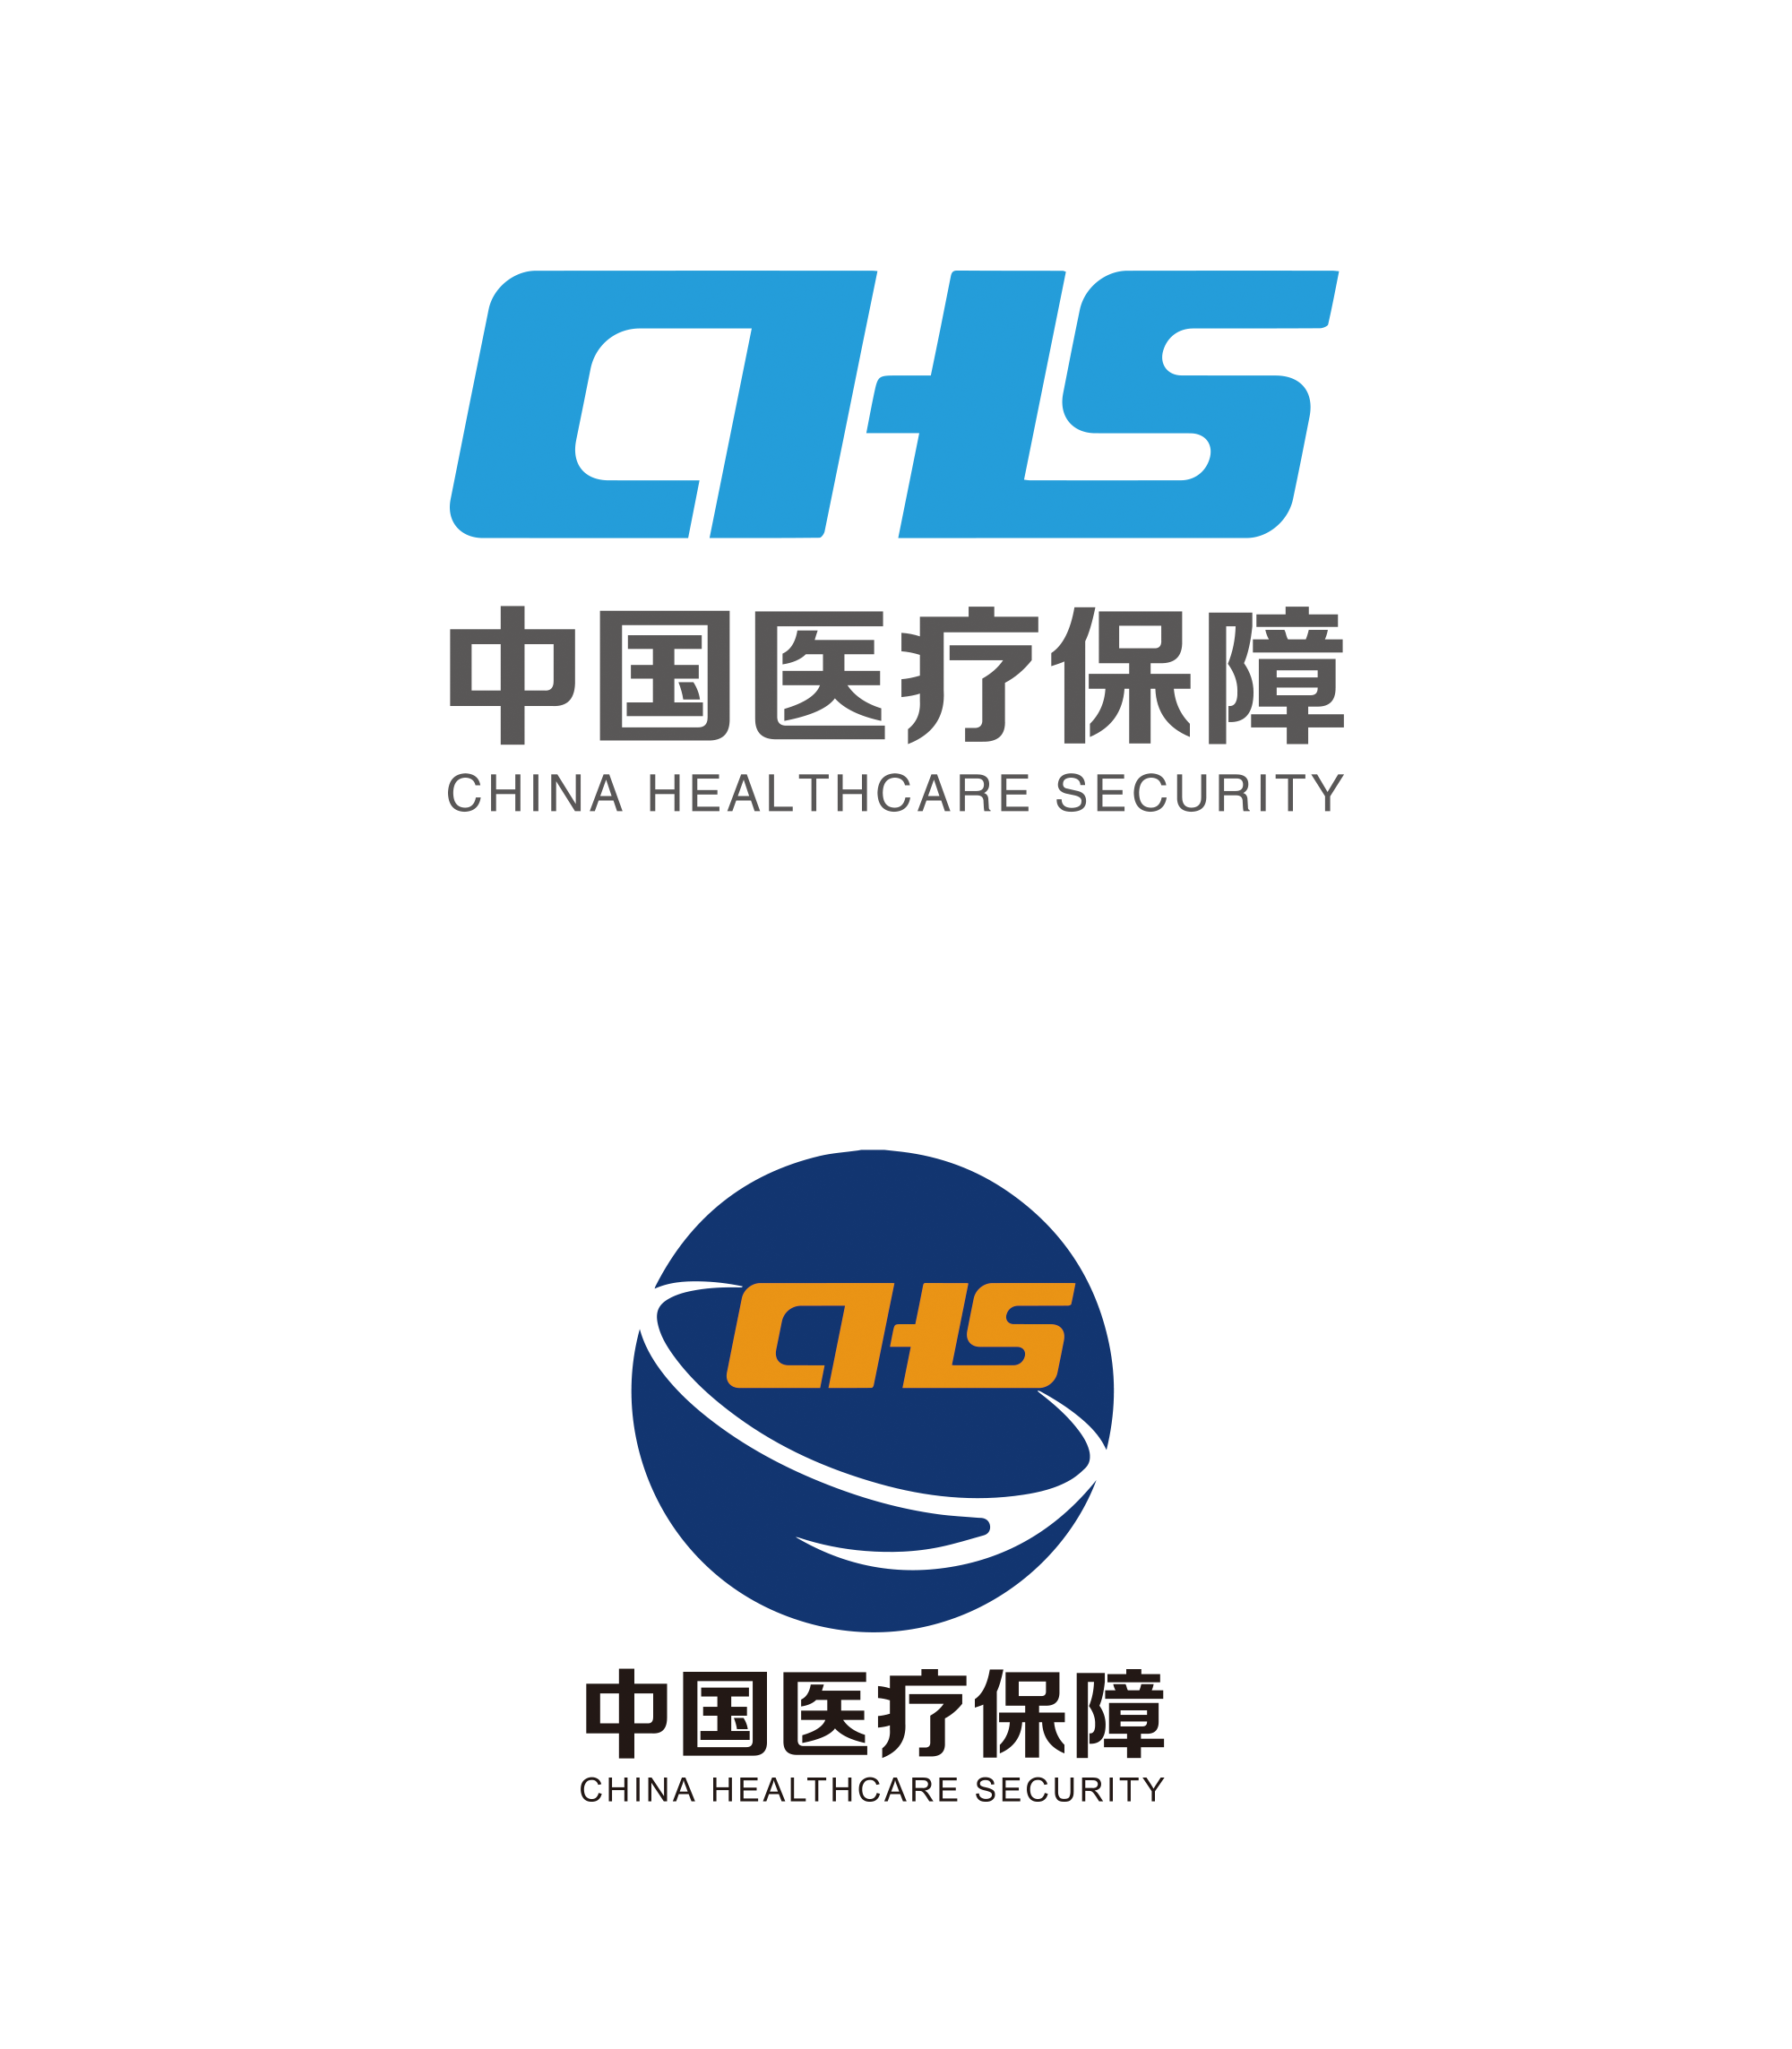 高清中国医疗保障logo矢量素材下载